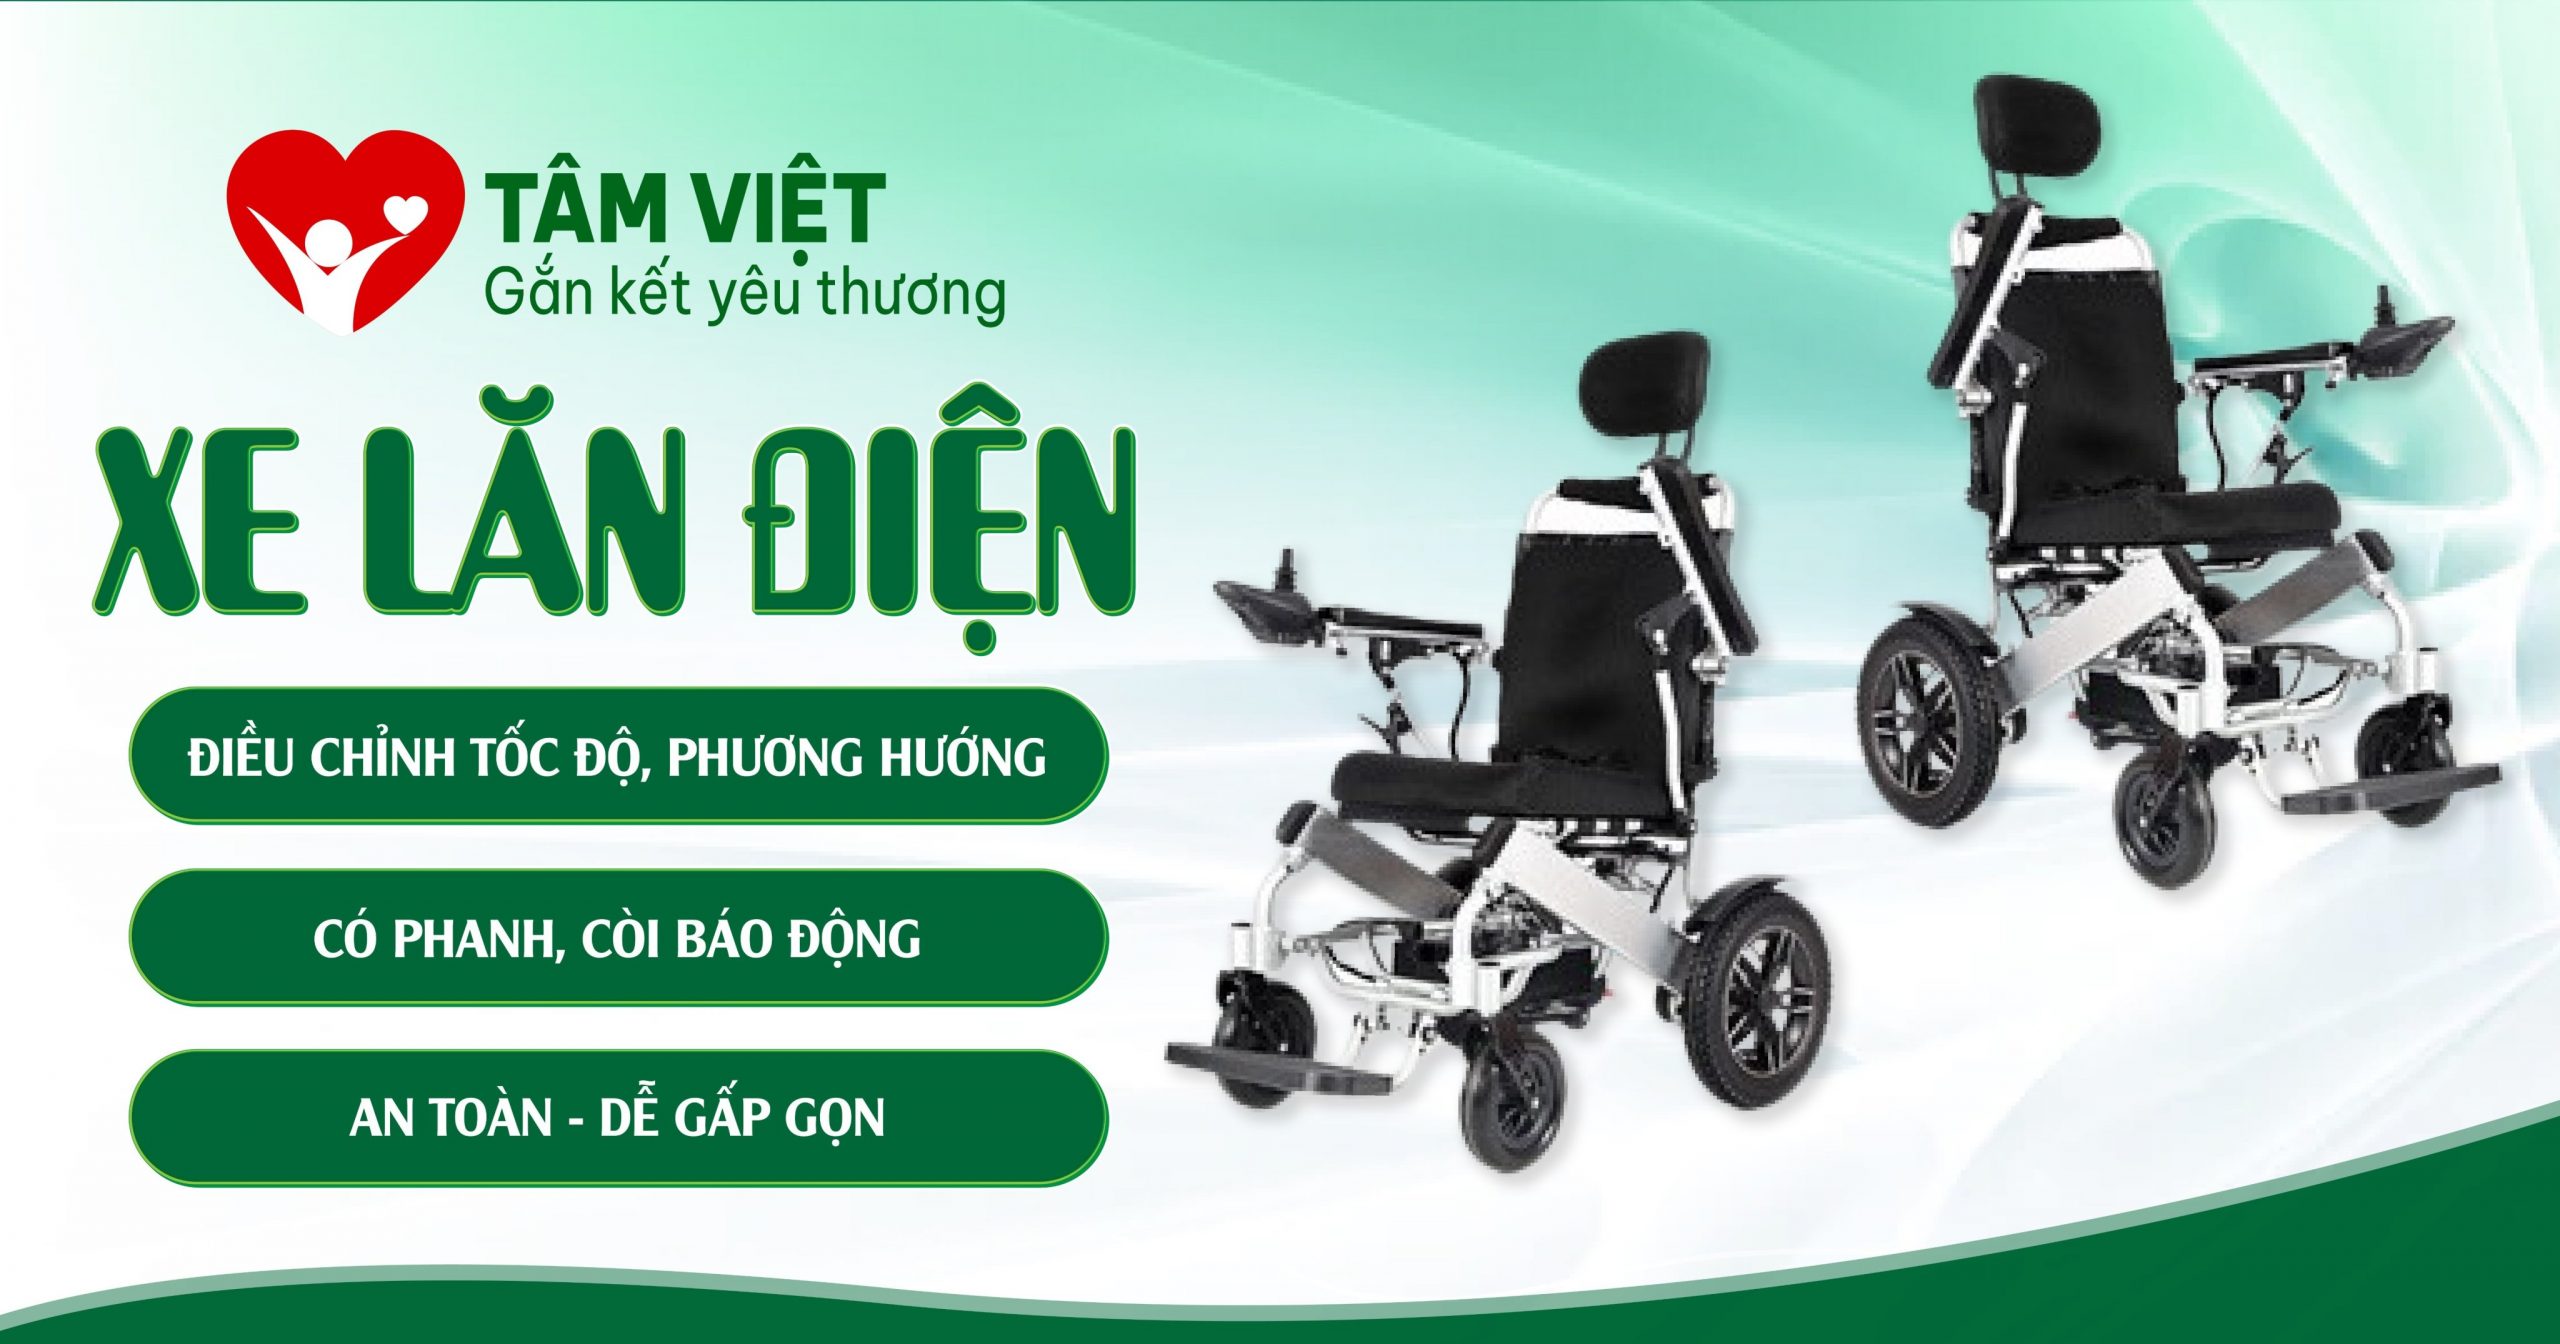 Sản phẩm xe lăn điện tại Tâm Việt có độ bền cao